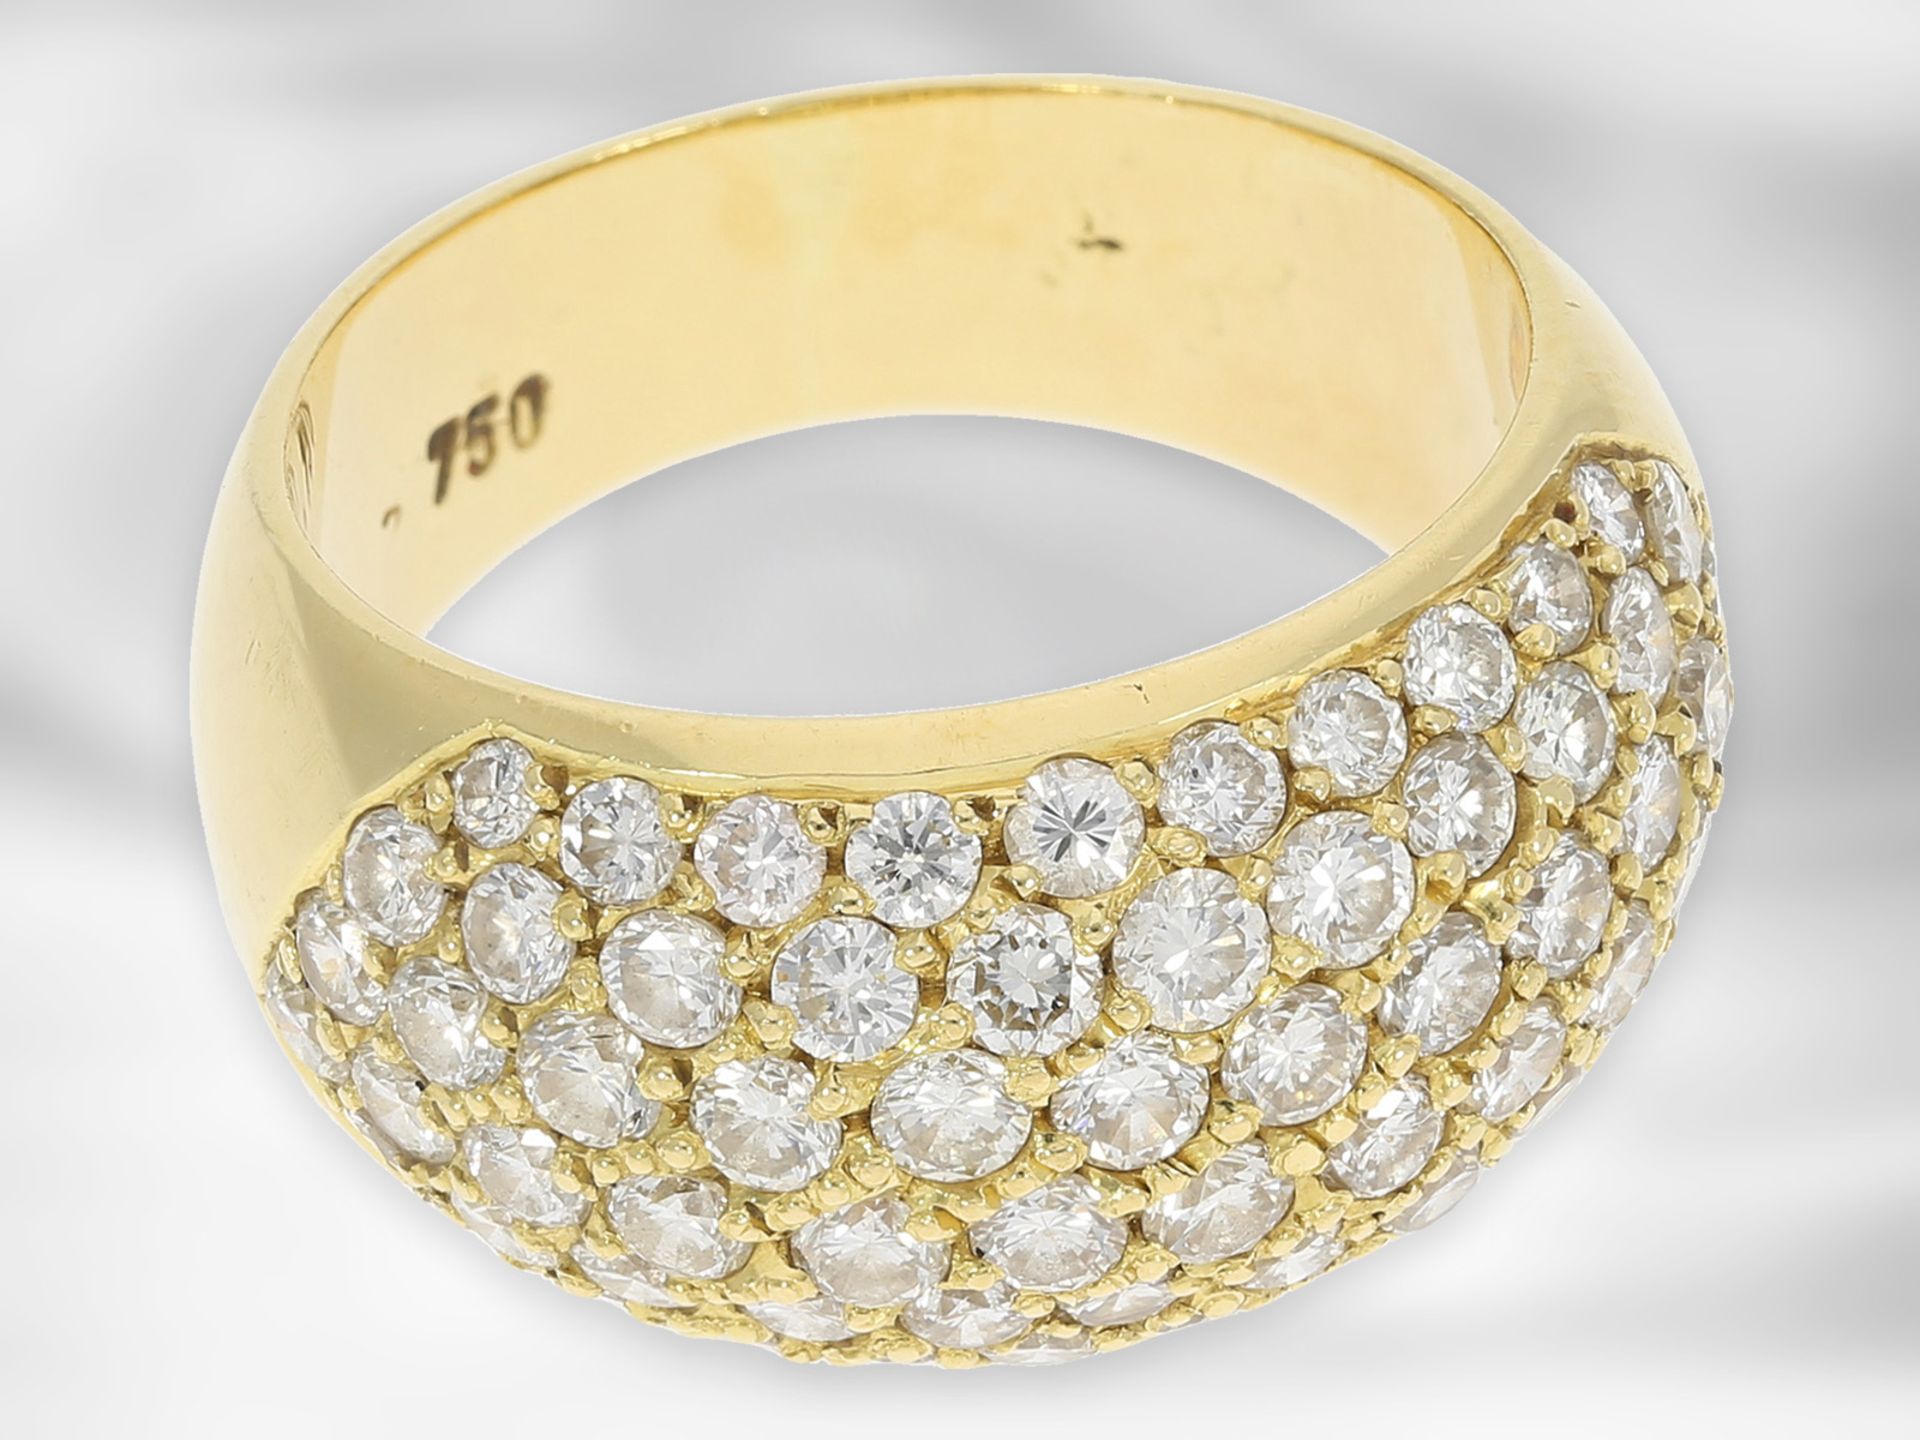 Ring: sehr schöner goldener Pavéring mit Brillantbesatz von insgesamt 2,48ct, 18K Gelbgold Ca. - Bild 3 aus 3